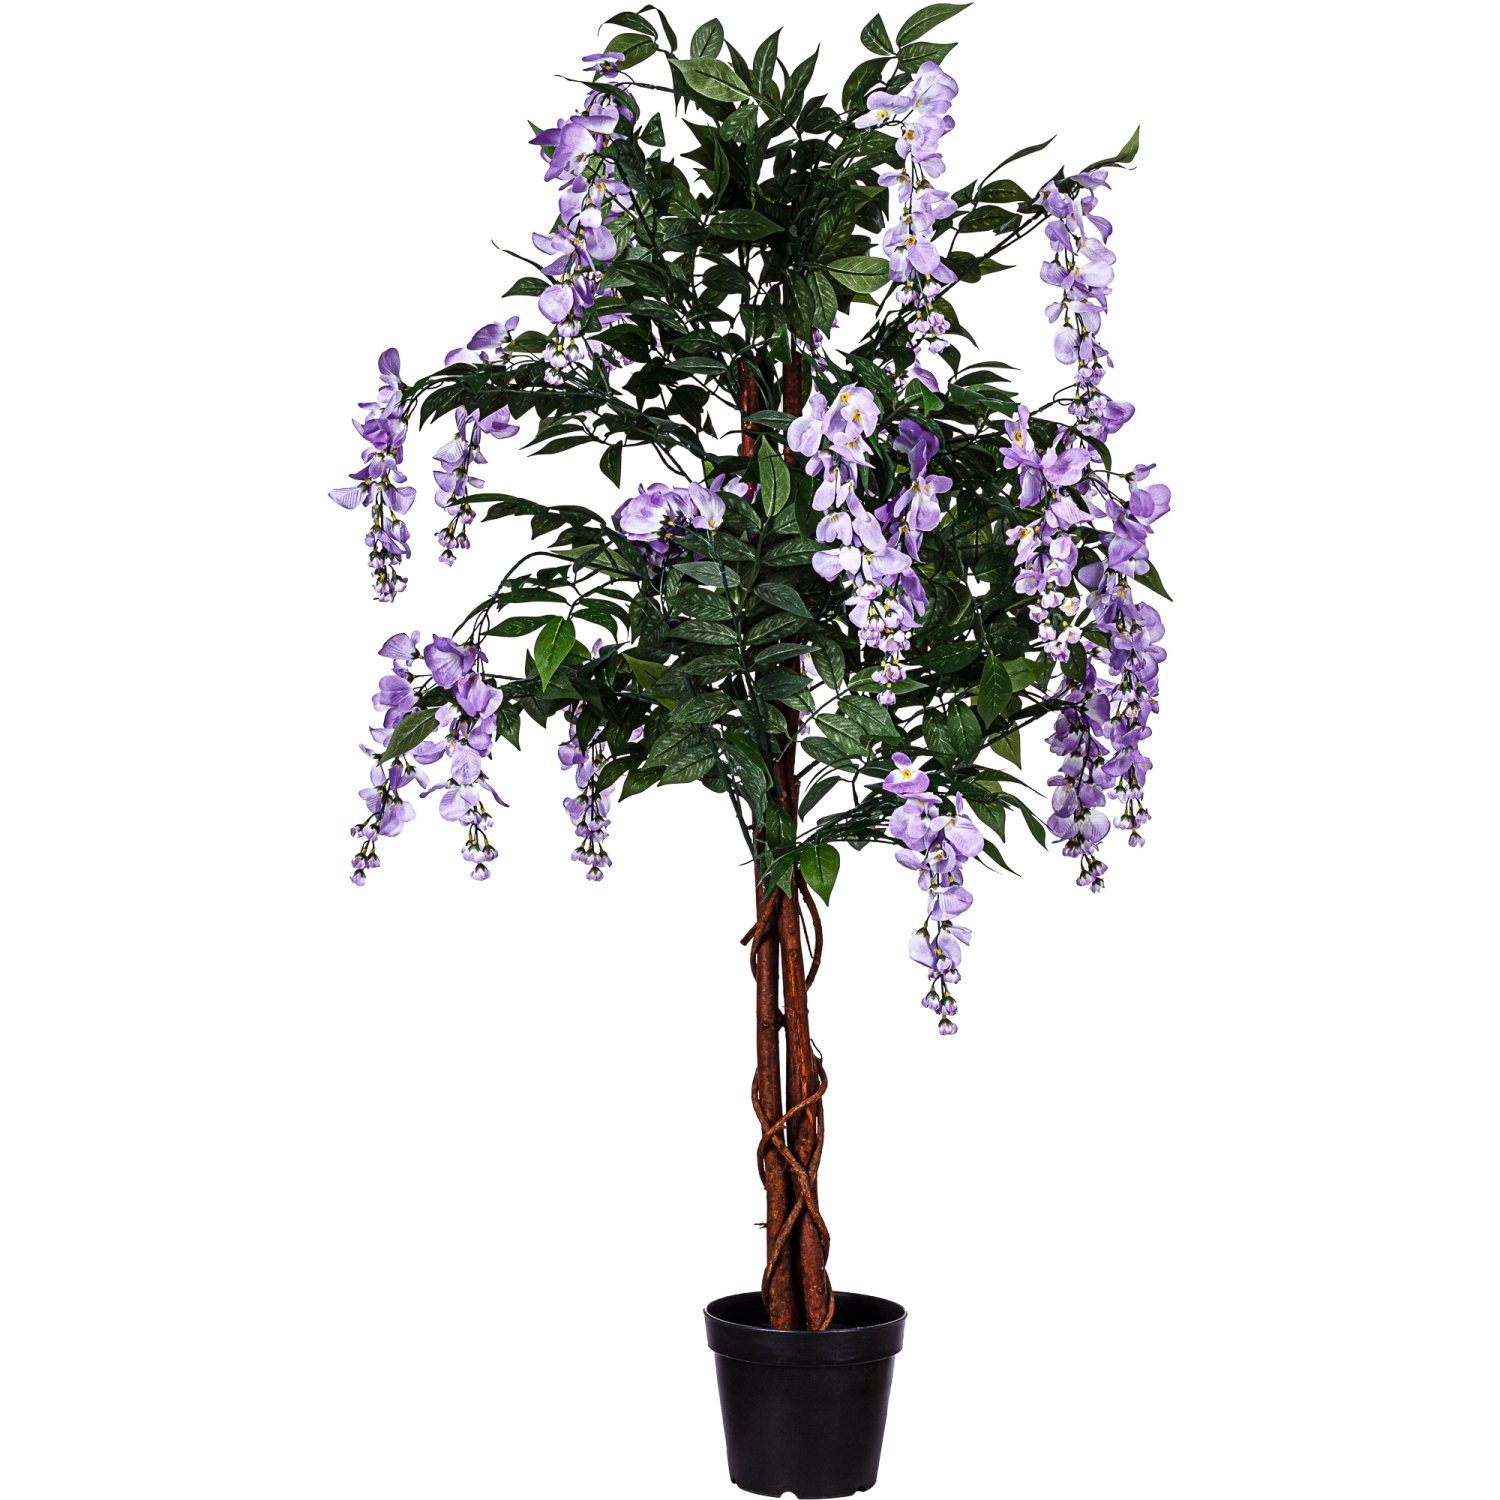 Kunstbaum Künstlicher Wisteria Baum Blauregen Kunstpflanze Wisteriabaum, PLANTASIA, Höhe 120,00 cm, 756 Blätter, Echtholzstamm, Violette Blüten